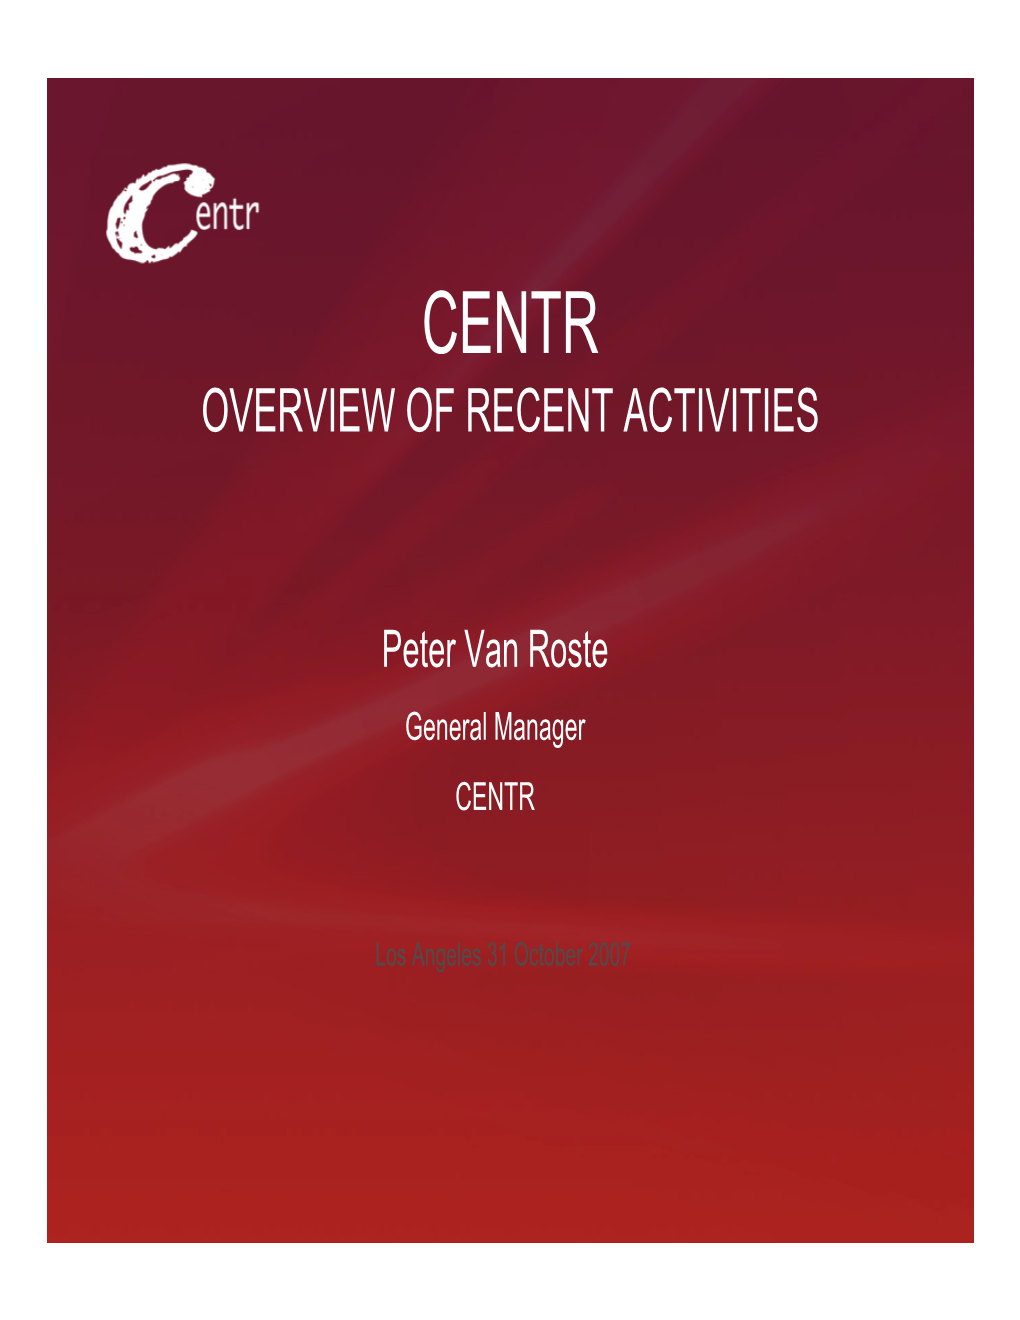 CENTR Update – Peter Van Roste